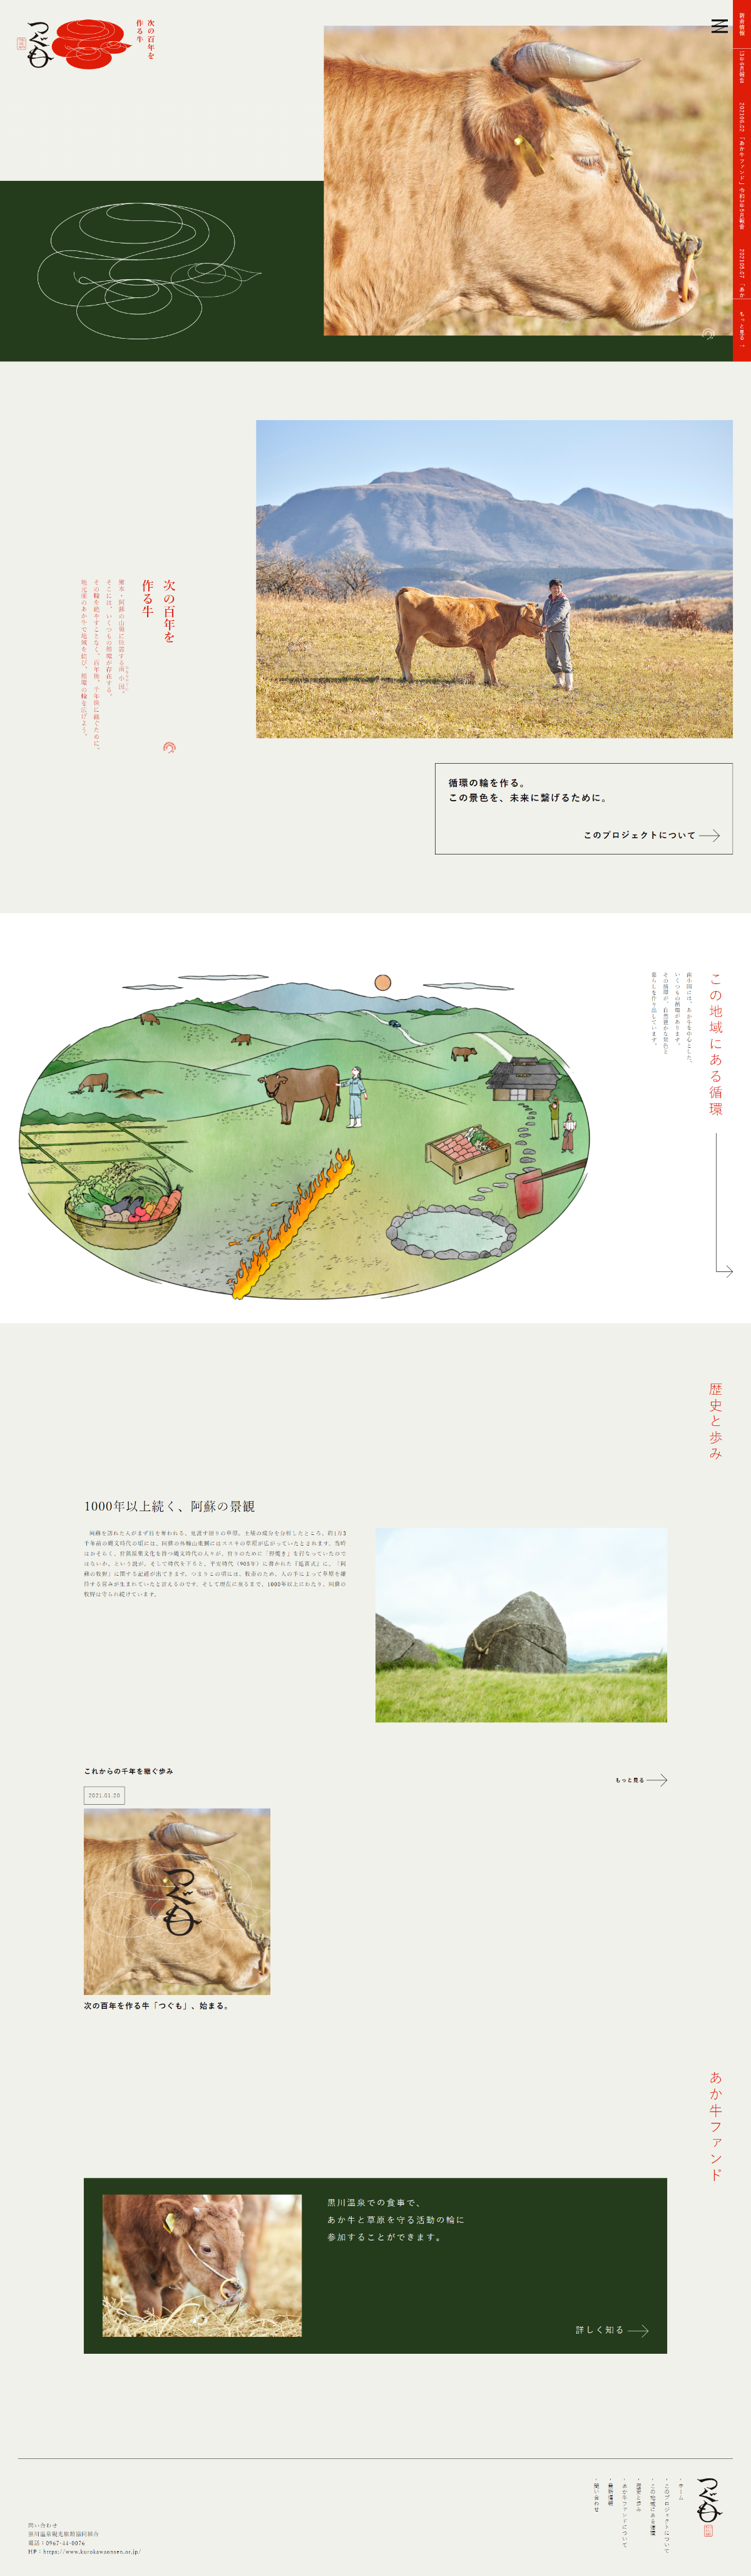 農業・林業・水産業 ホームページ制作 WEBデザイン参考ギャラリー つぐも – TSUGUMO –